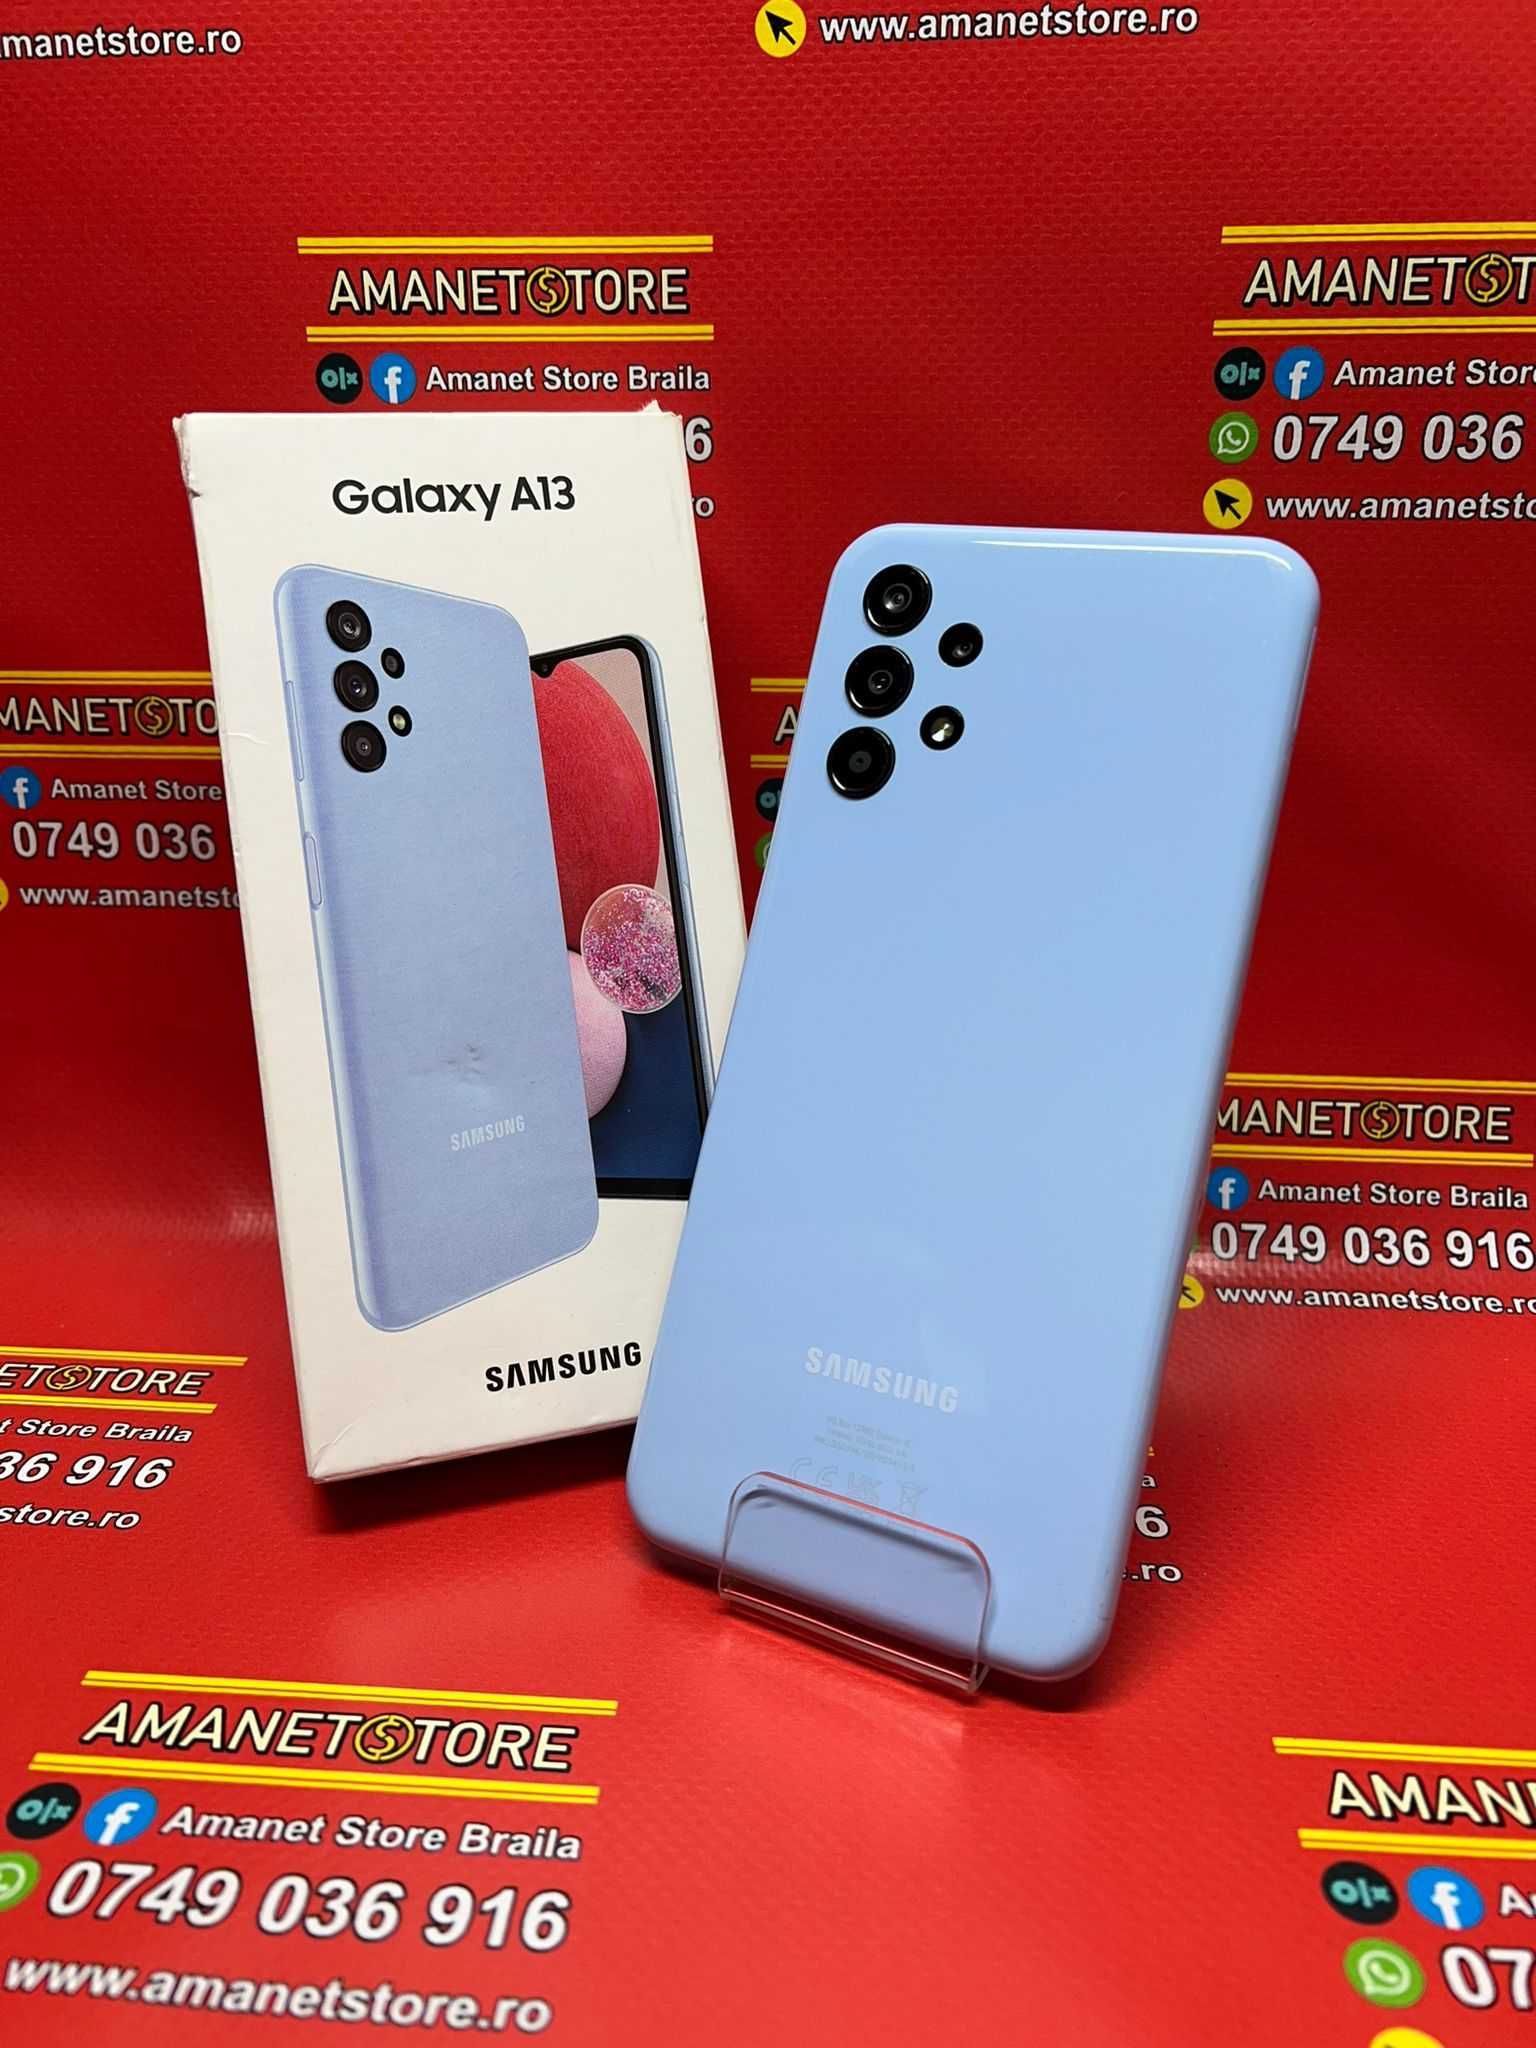 Samsung Galaxy A13 Amanet Store Braila [9804]